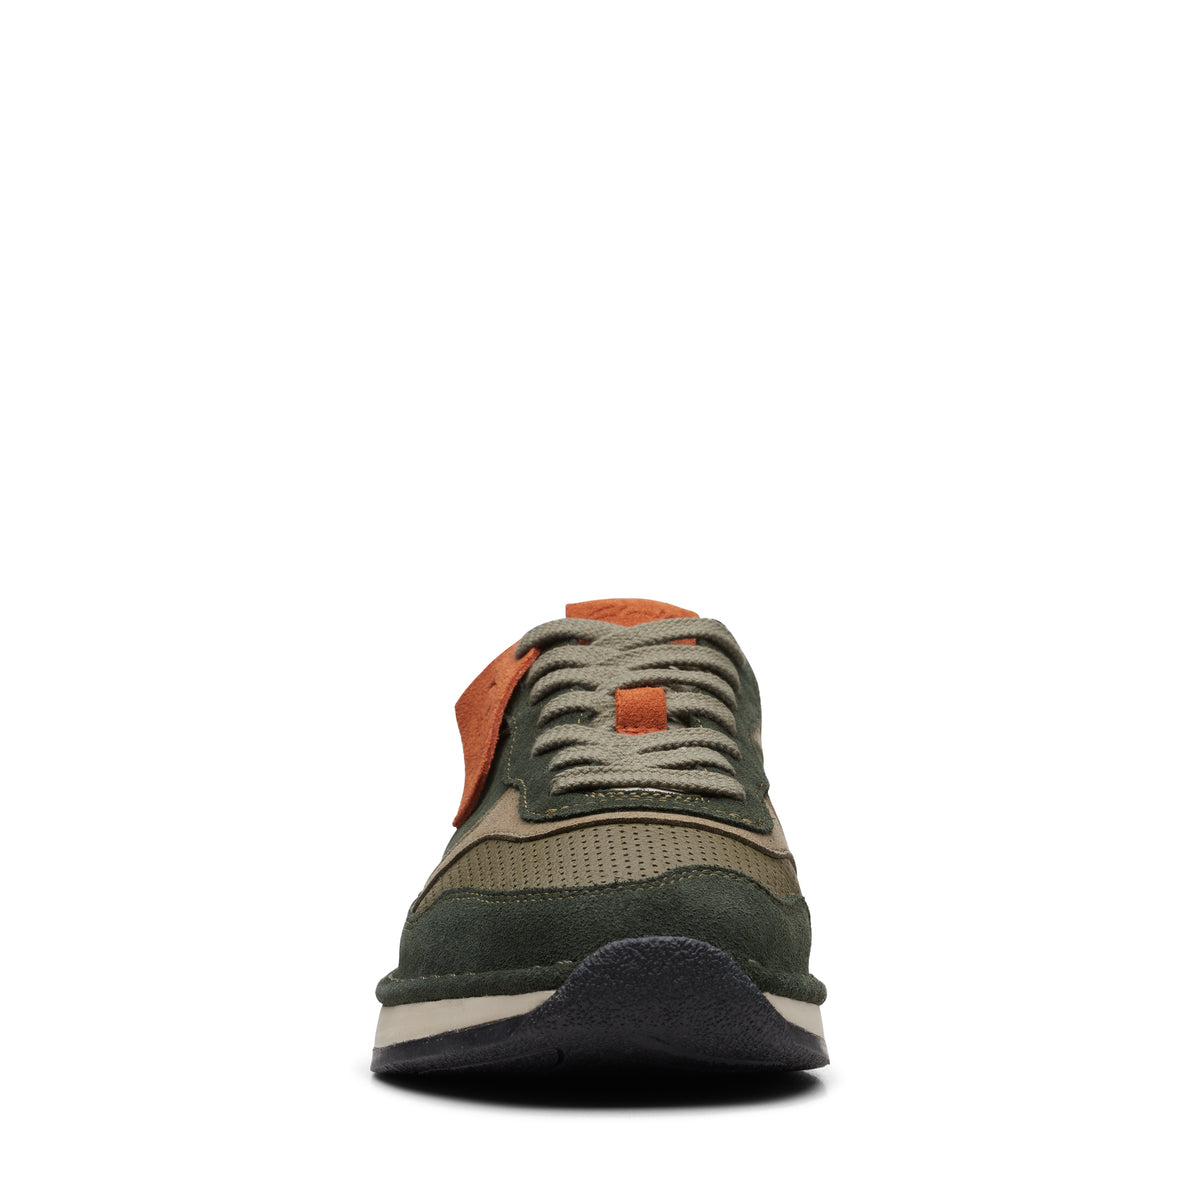 Sneakers De La Marca Clarks Para Hombre Modelo Craft Run Tor Olive CombiEn Color Verde